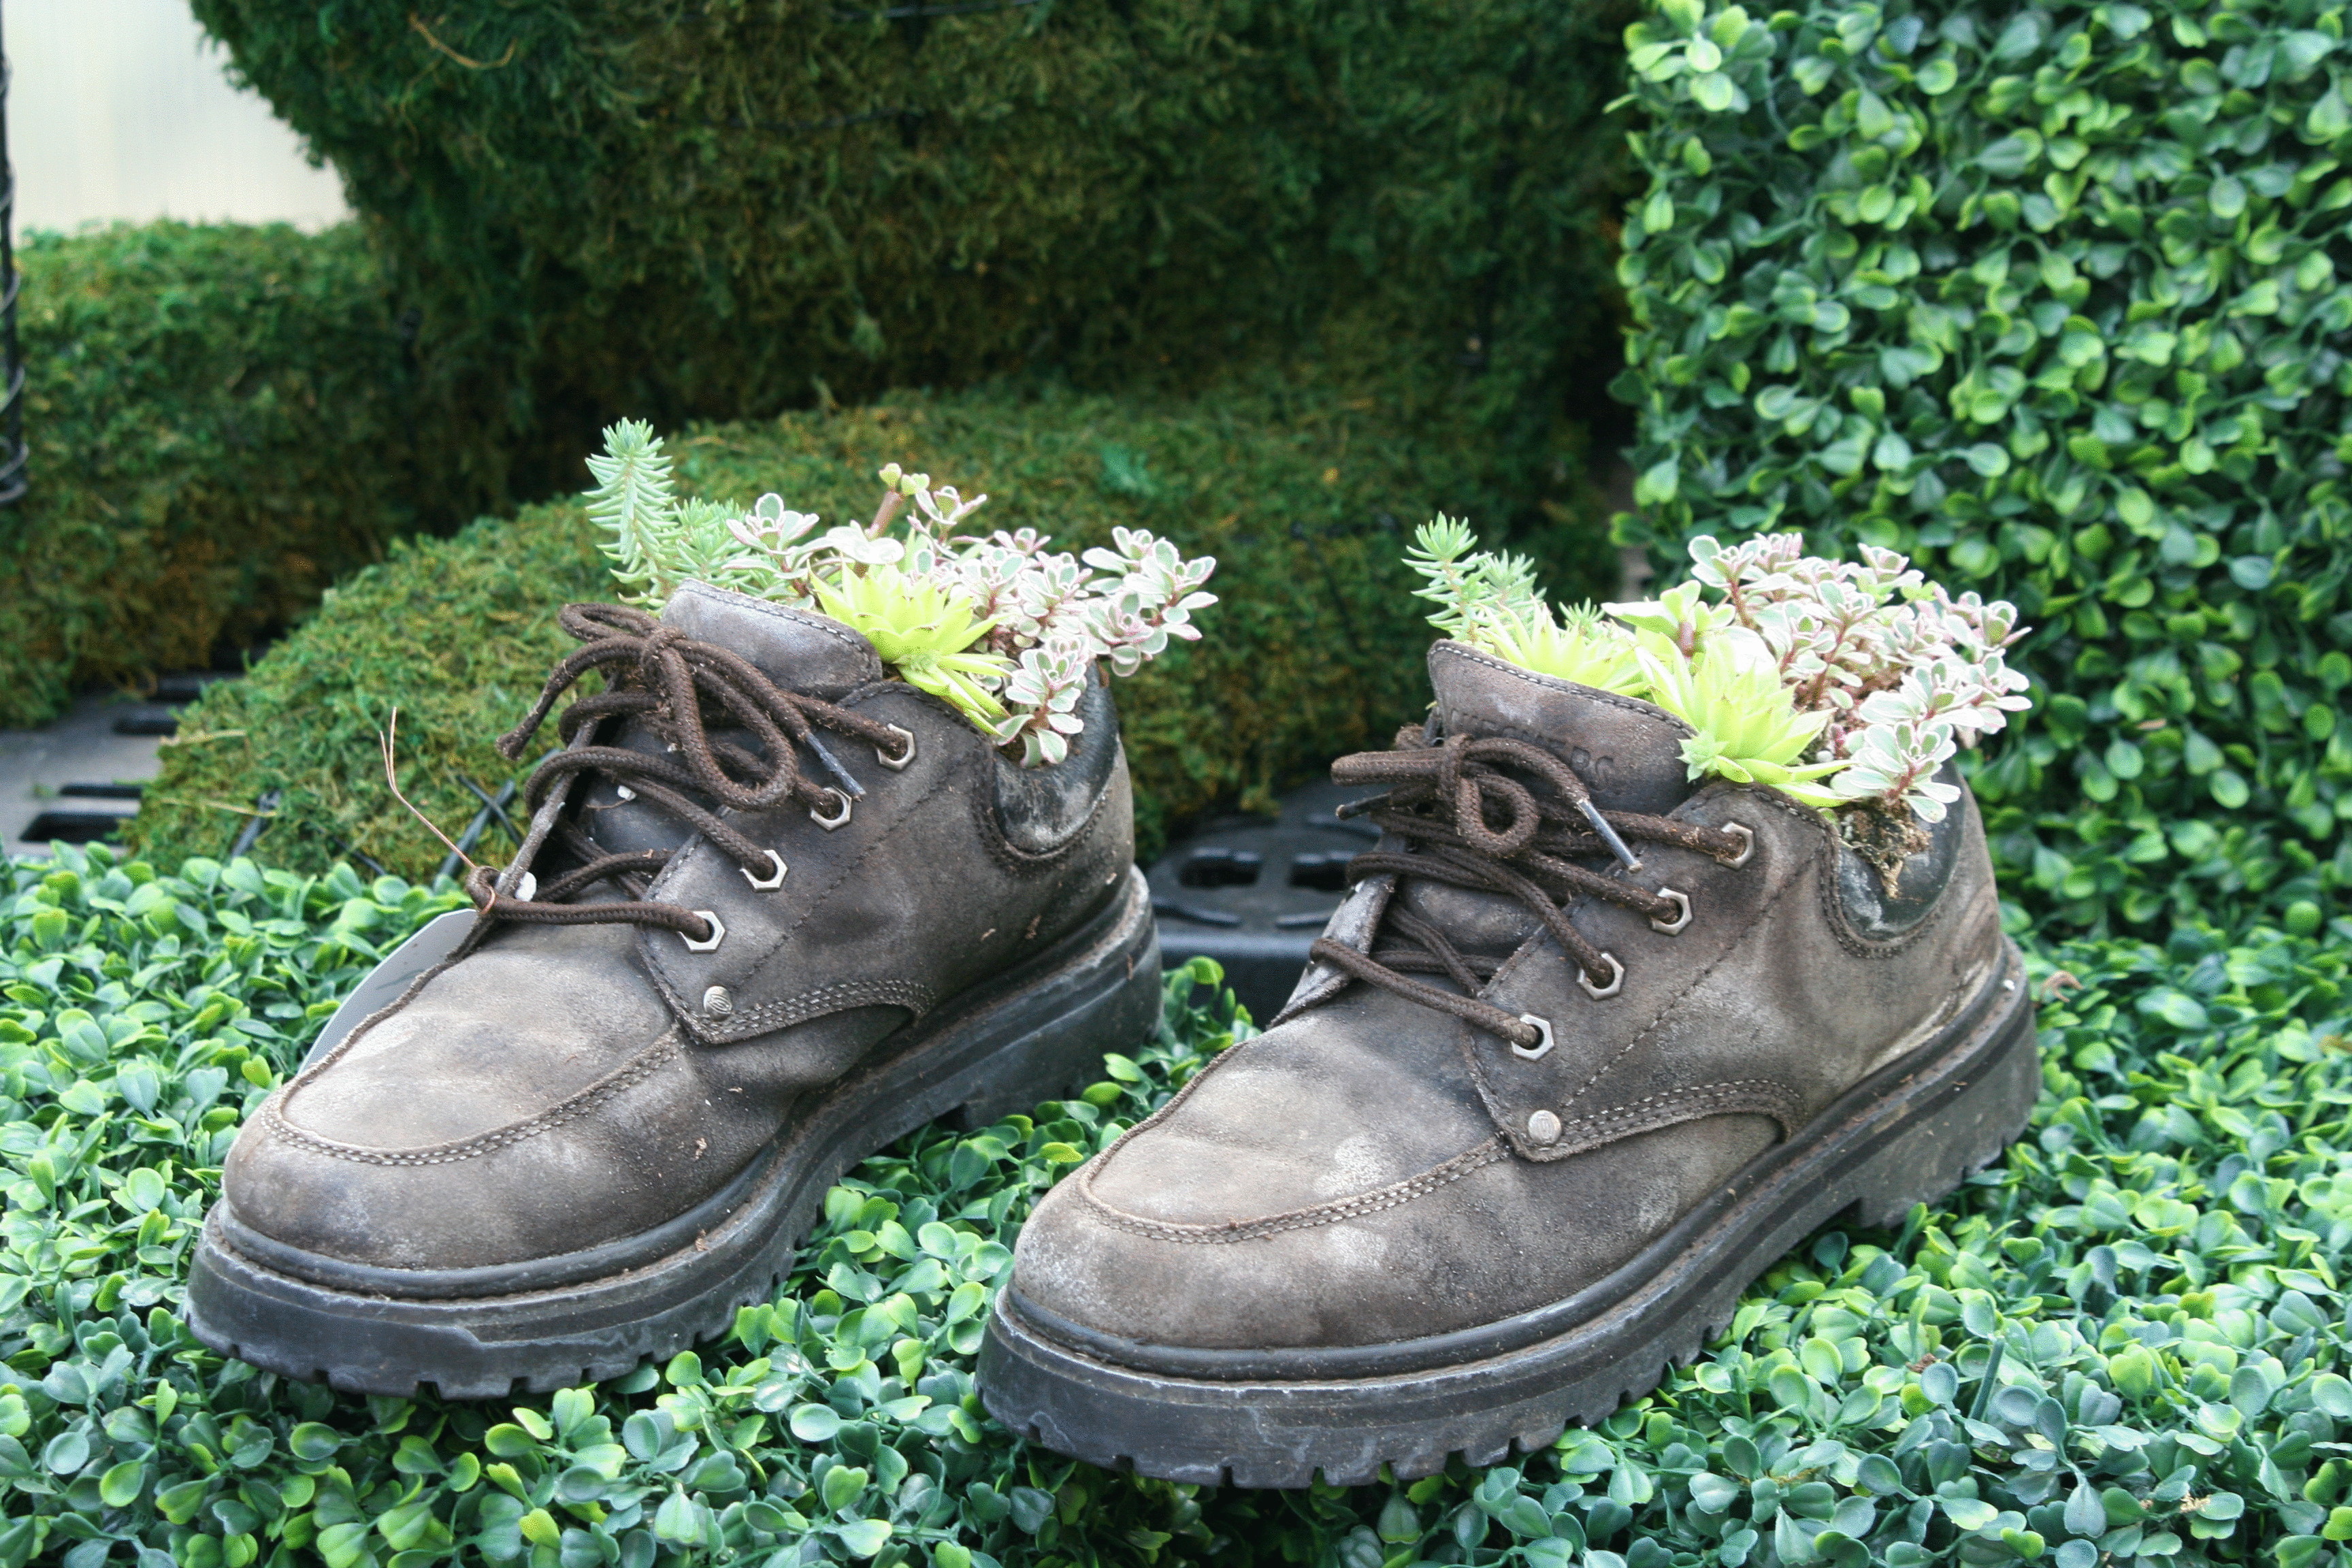 Как превратить старую обувь в цветочные горшки?